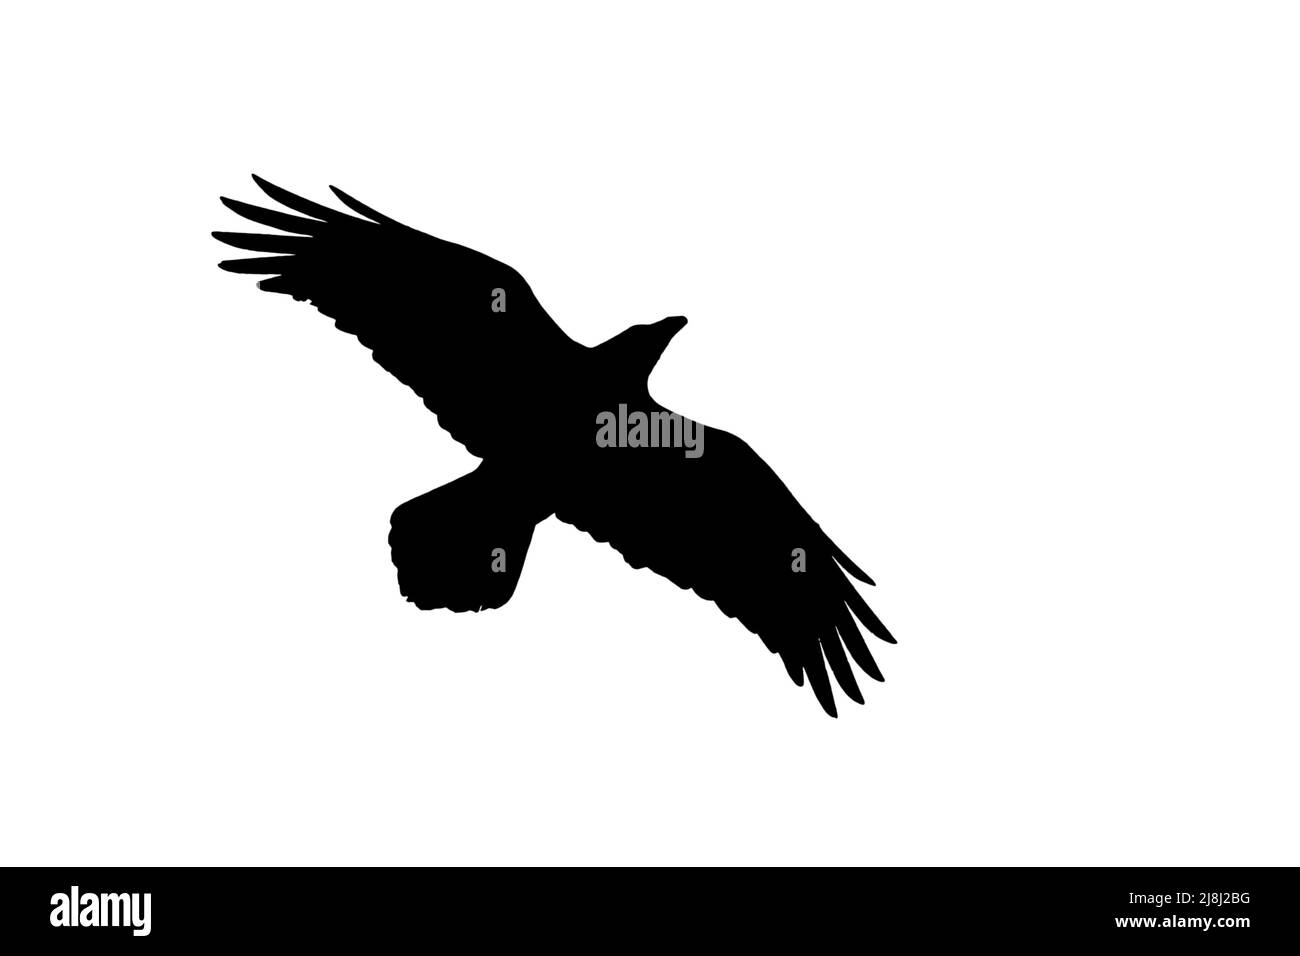 Silueta de cuervo común / cuervo norte (Corvus corax) en vuelo contorneado sobre fondo blanco para mostrar alas, cabeza y cola formas Foto de stock